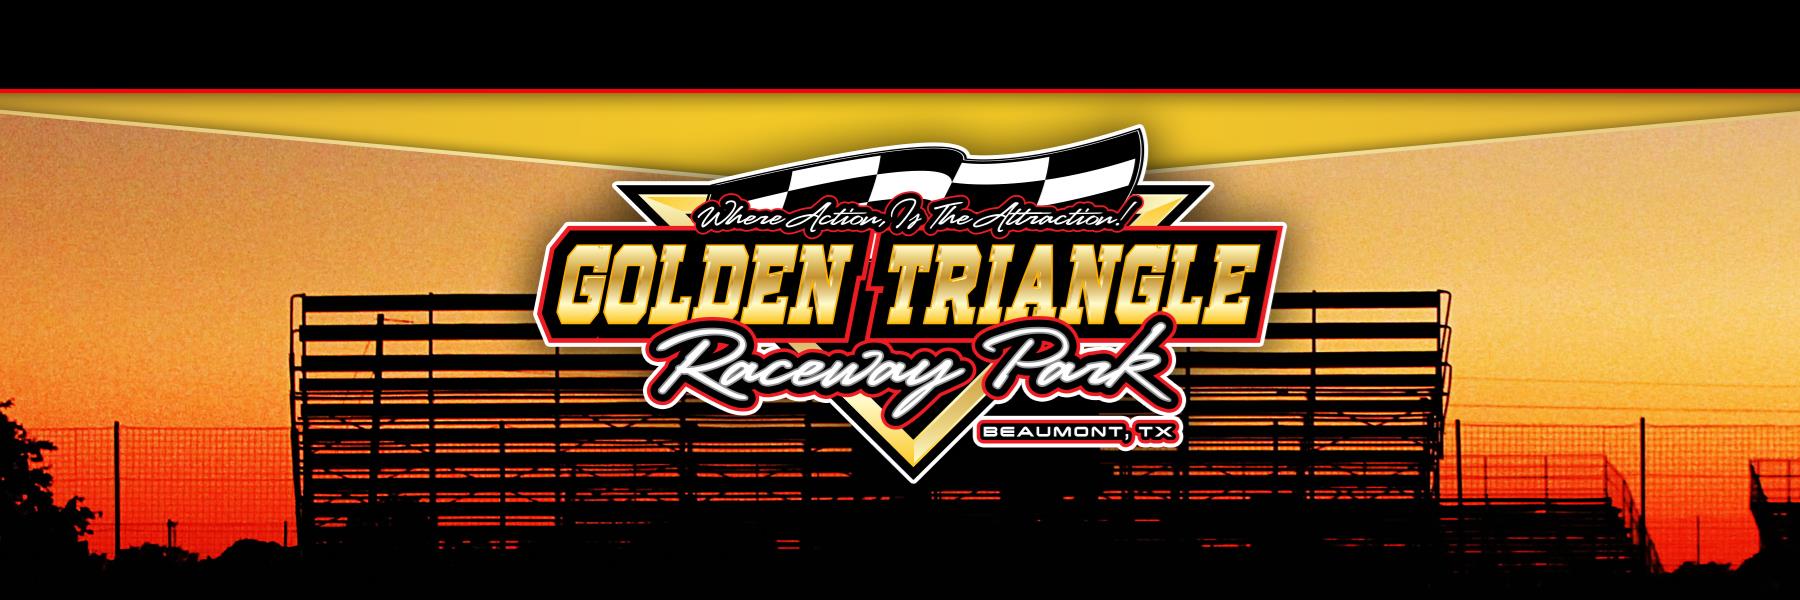 9/7/2019 - Golden Triangle Raceway Park